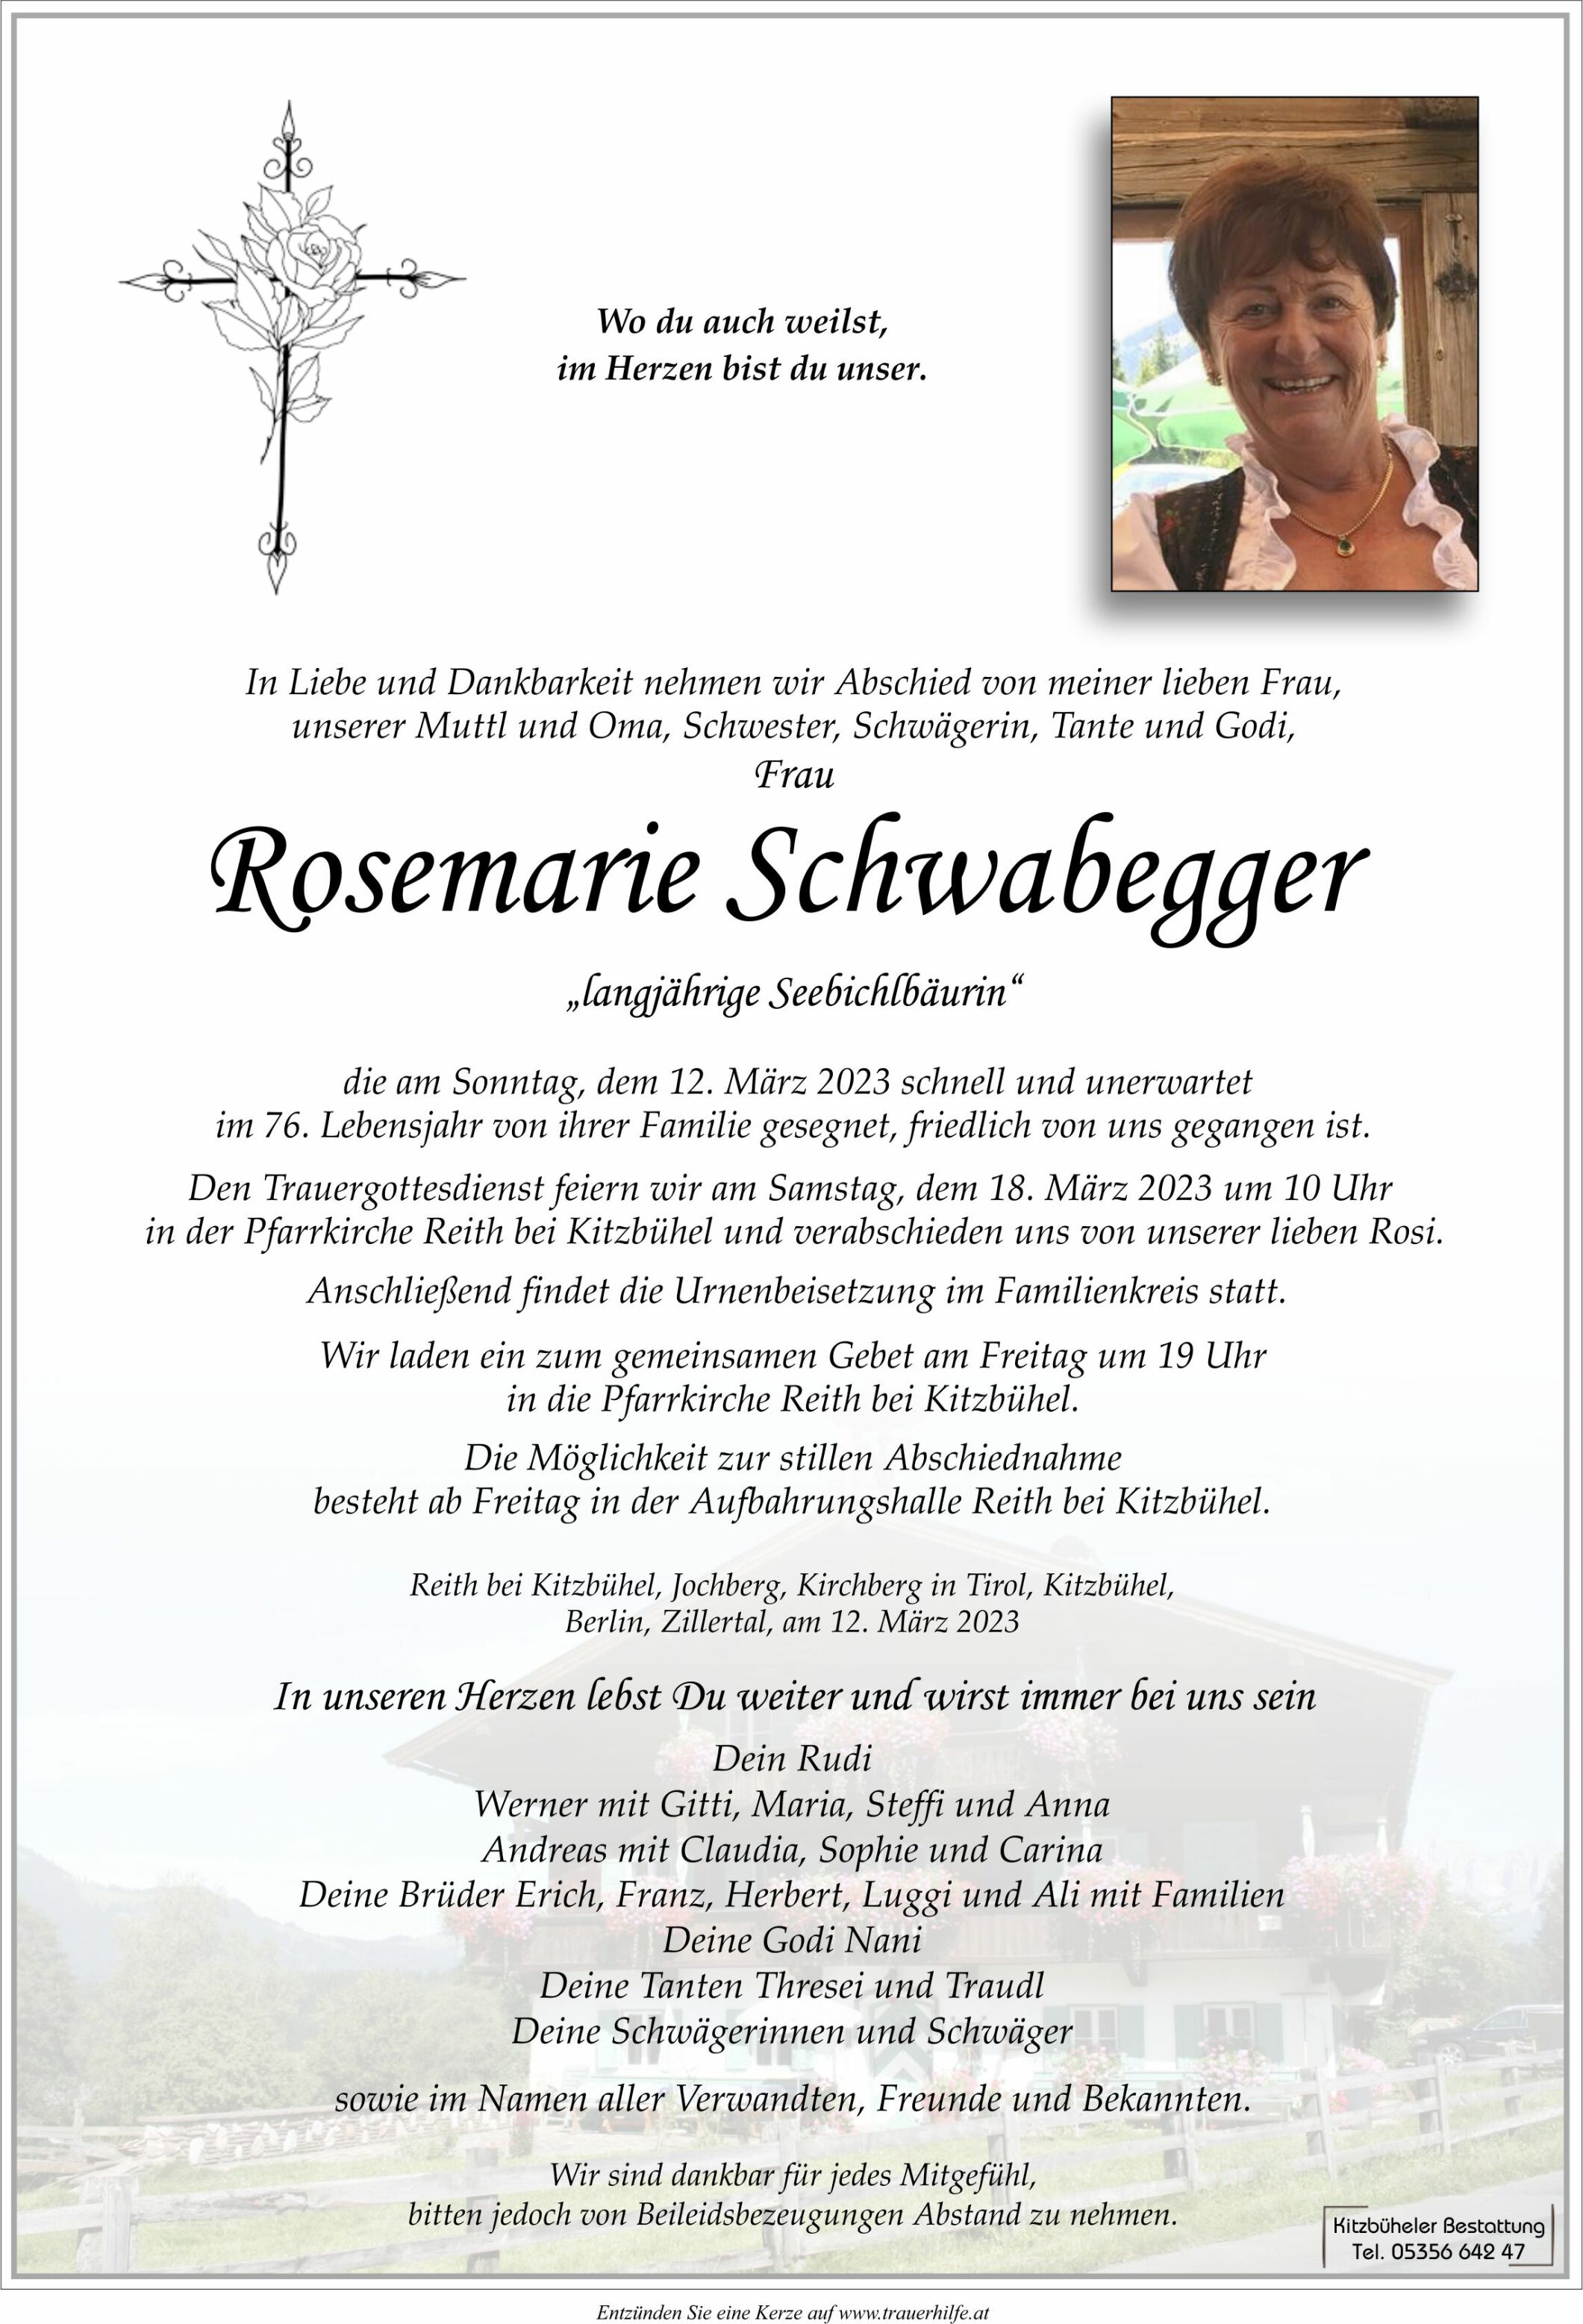 Rosemarie Schwabegger